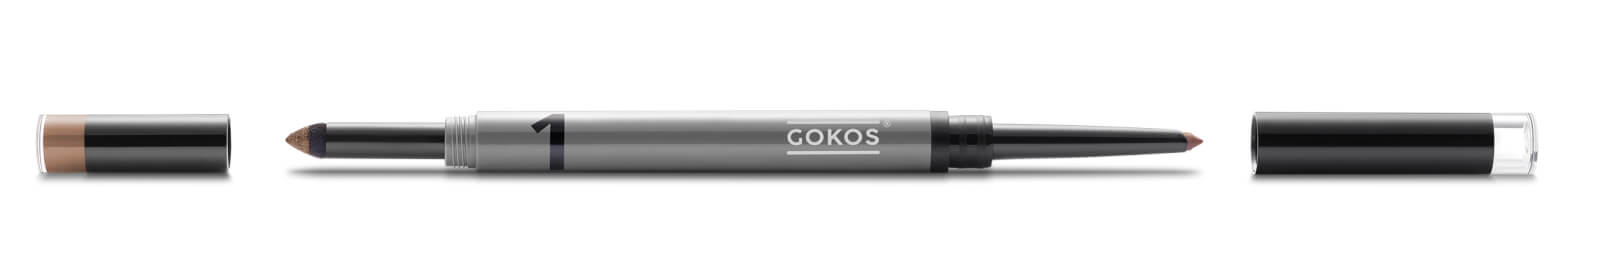 GOKOS - Beauty to go - Indie-Makeup-Brand mit Stiften 53